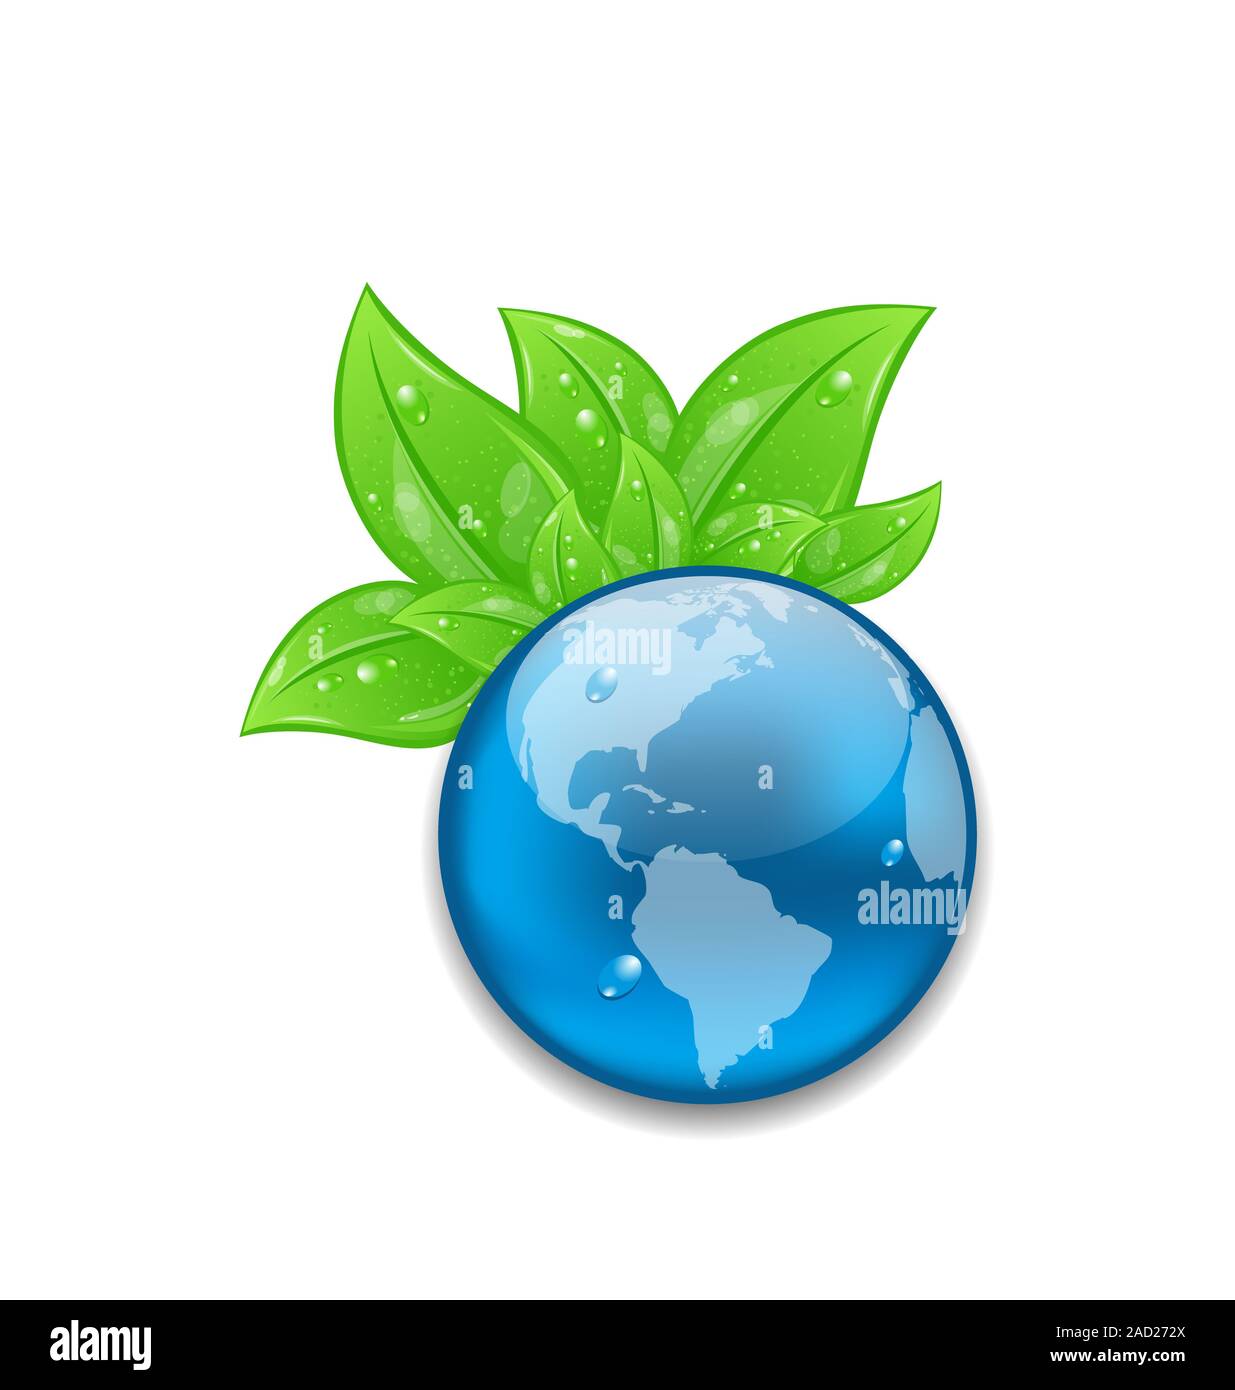 Symbole de la planète Terre avec des feuilles vertes Banque D'Images